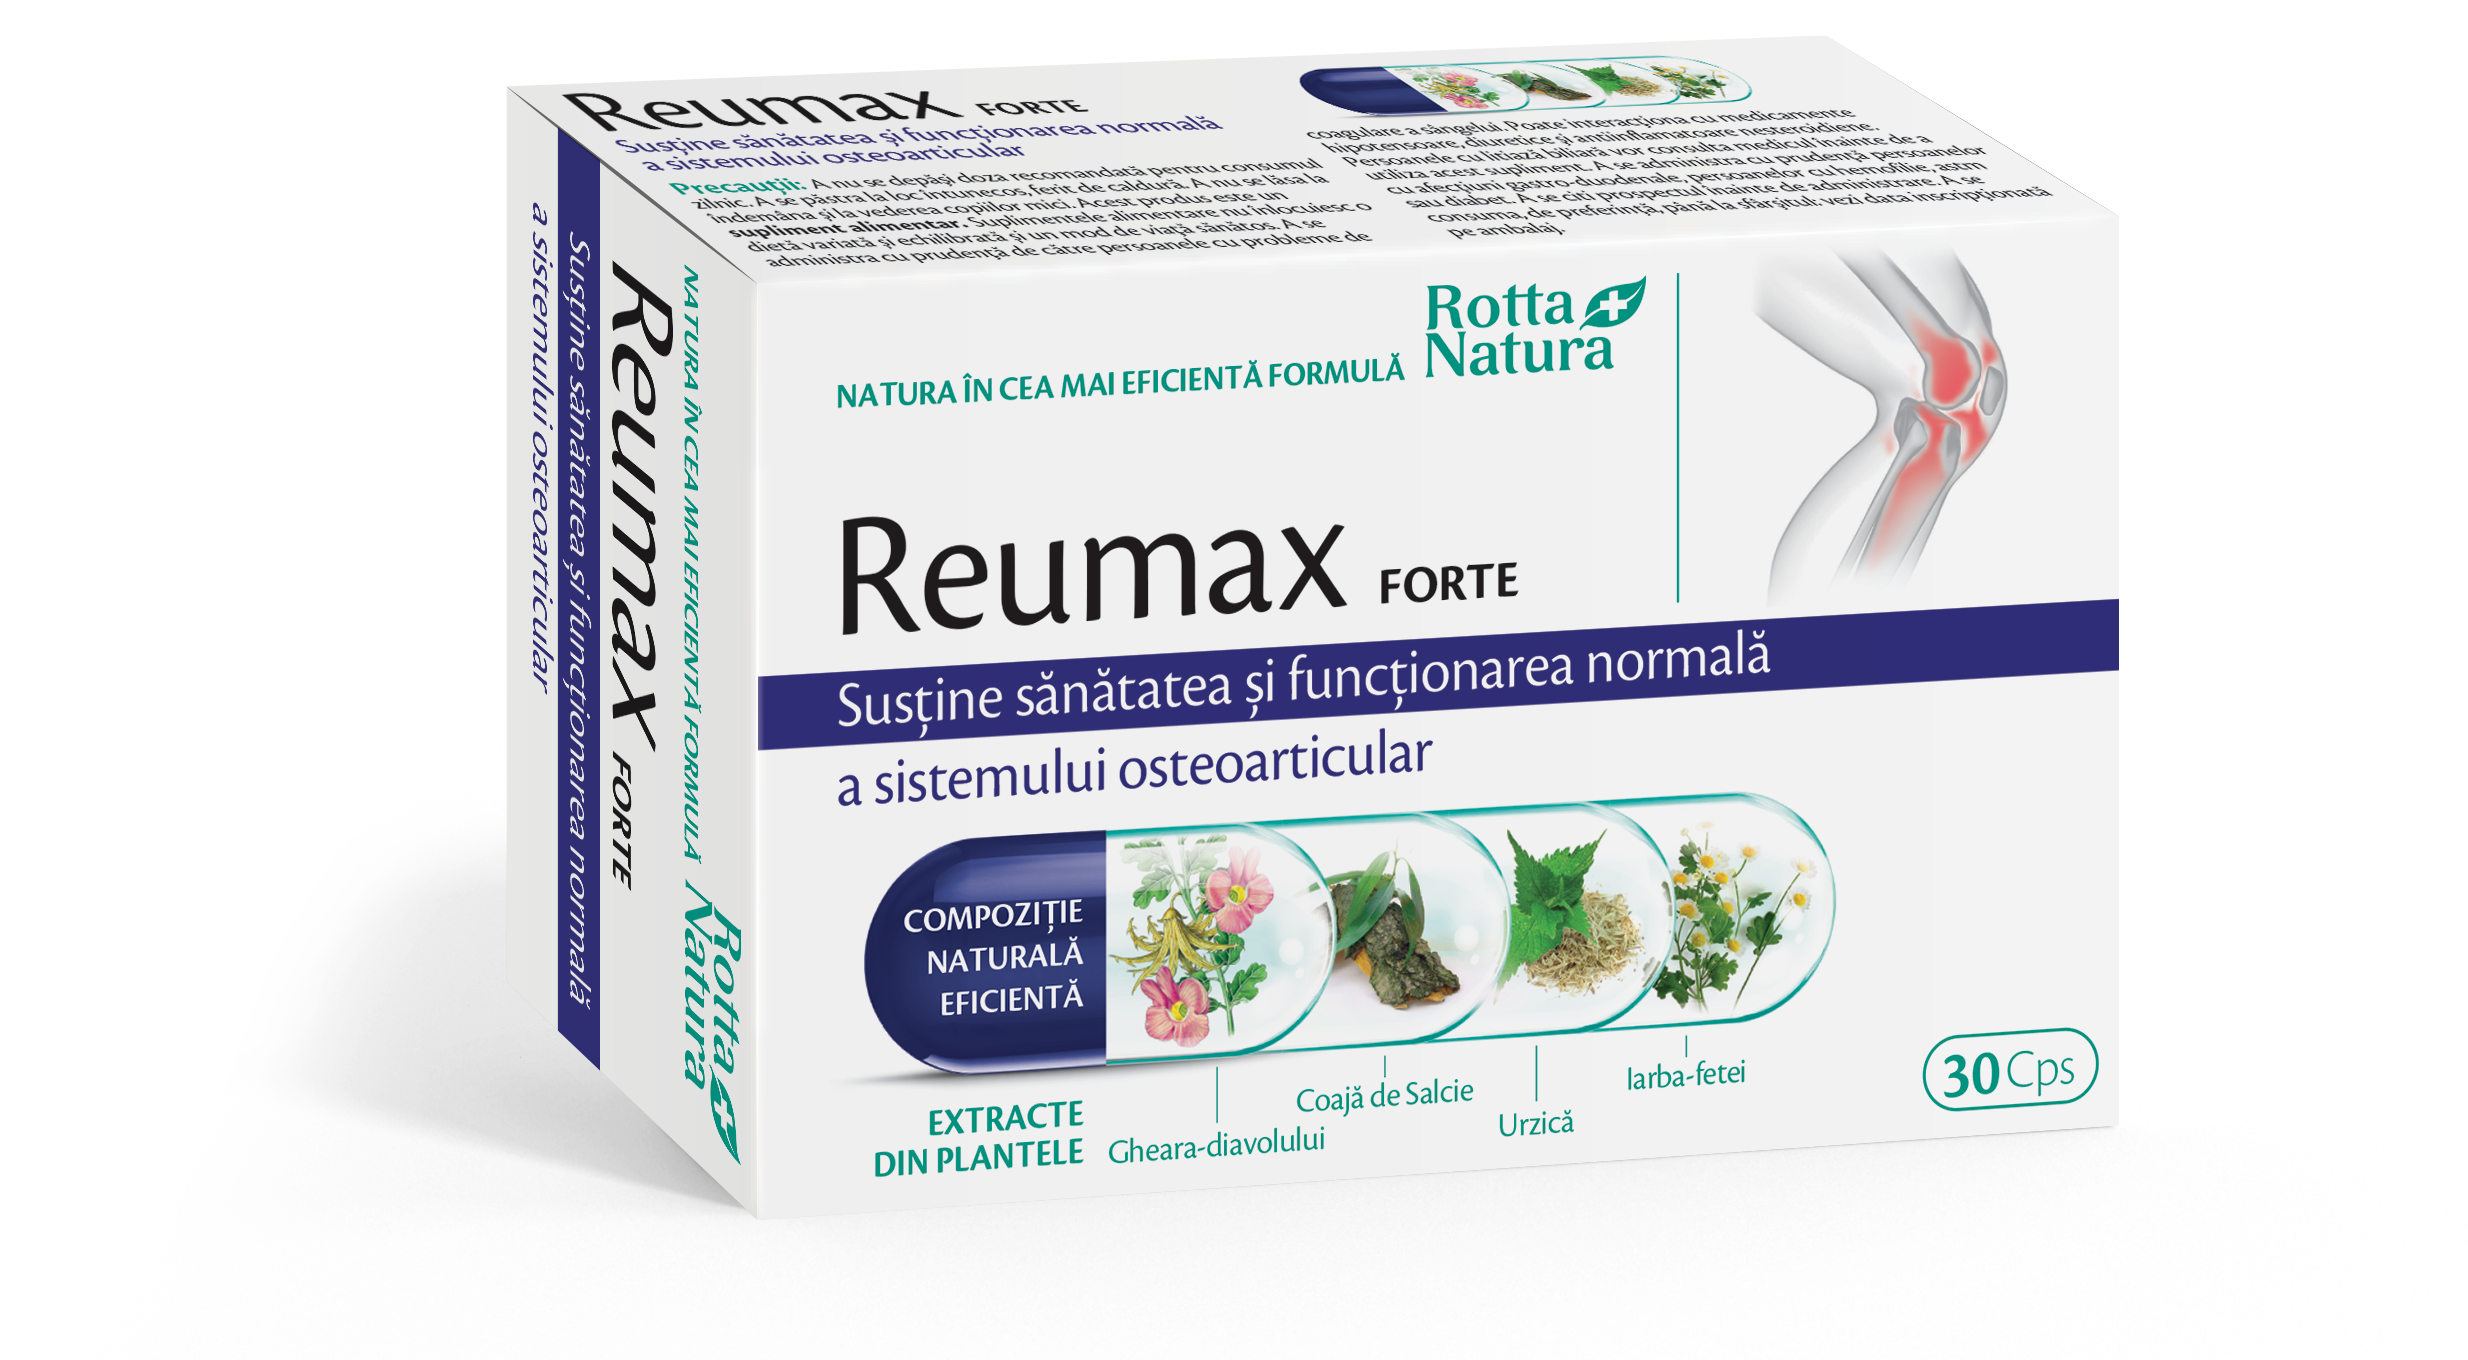 Articulatii si sistem osos - Reumax forte, 30 capsule, Rotta Natura, sinapis.ro